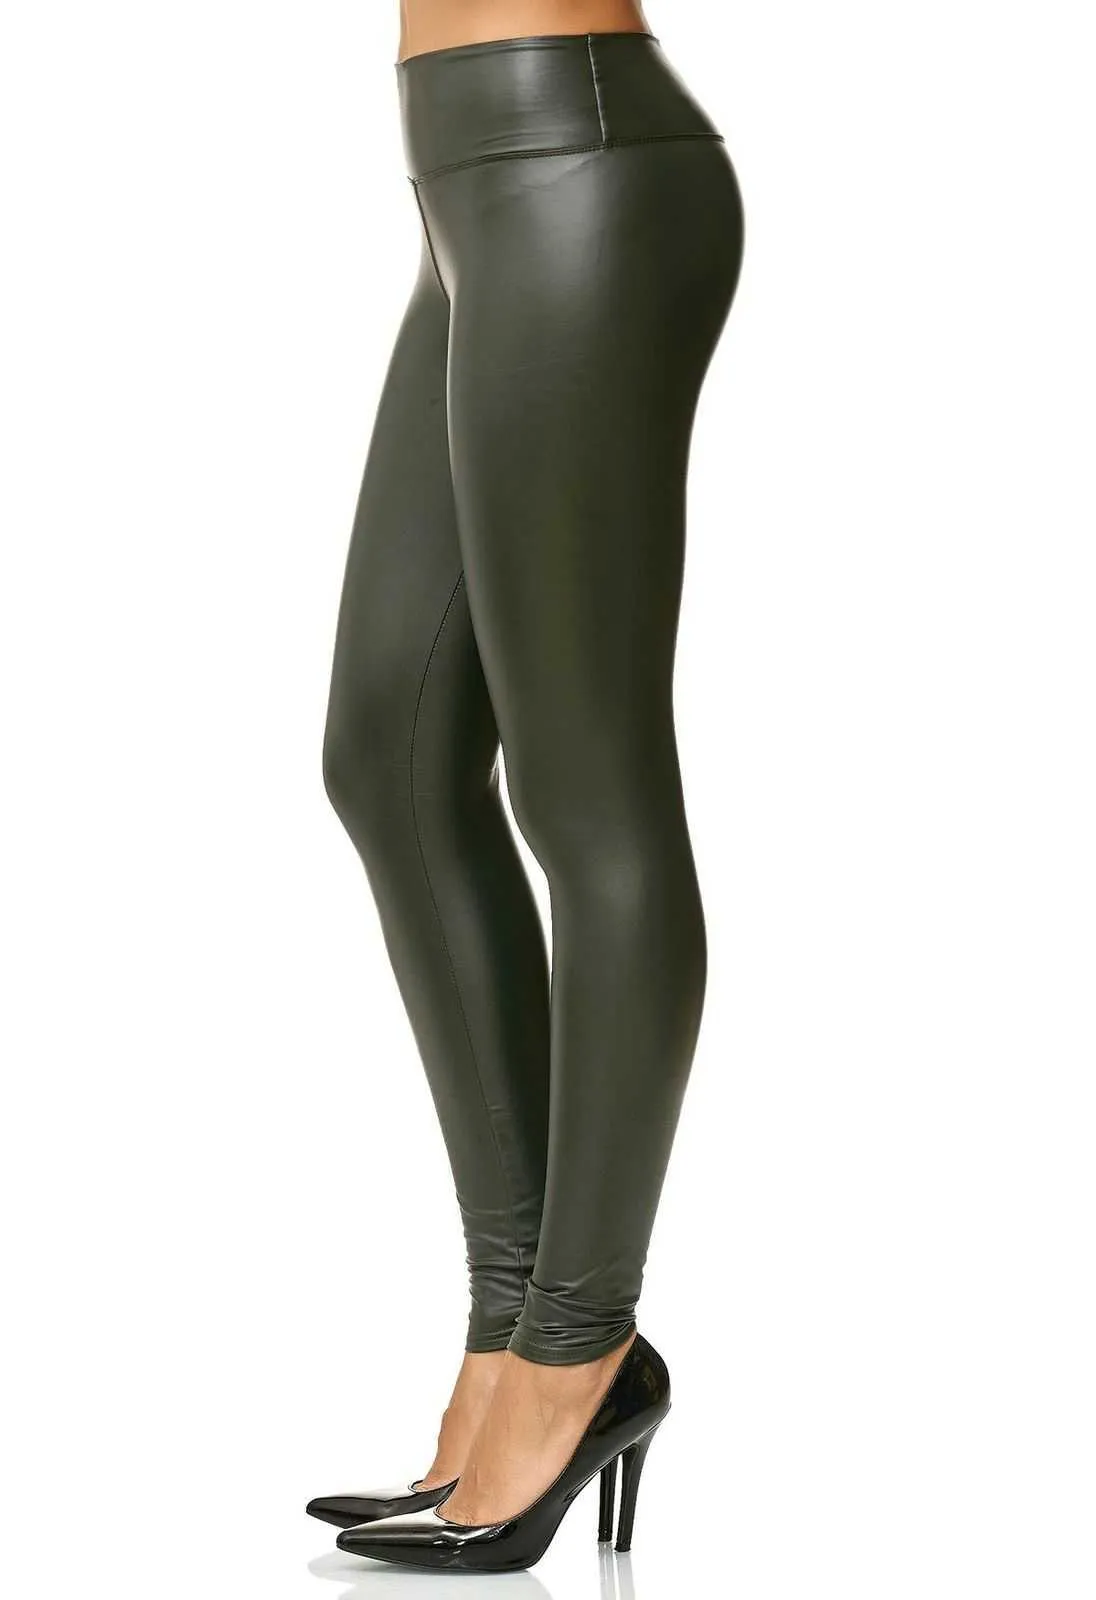 Zogaa Mode Dames Leggings Lederen Broek Hoge Taille Stretch Glanzende Broek Vrouwelijke Skinny Sexy Potlood Broek Plus Size S-3XL Q0801